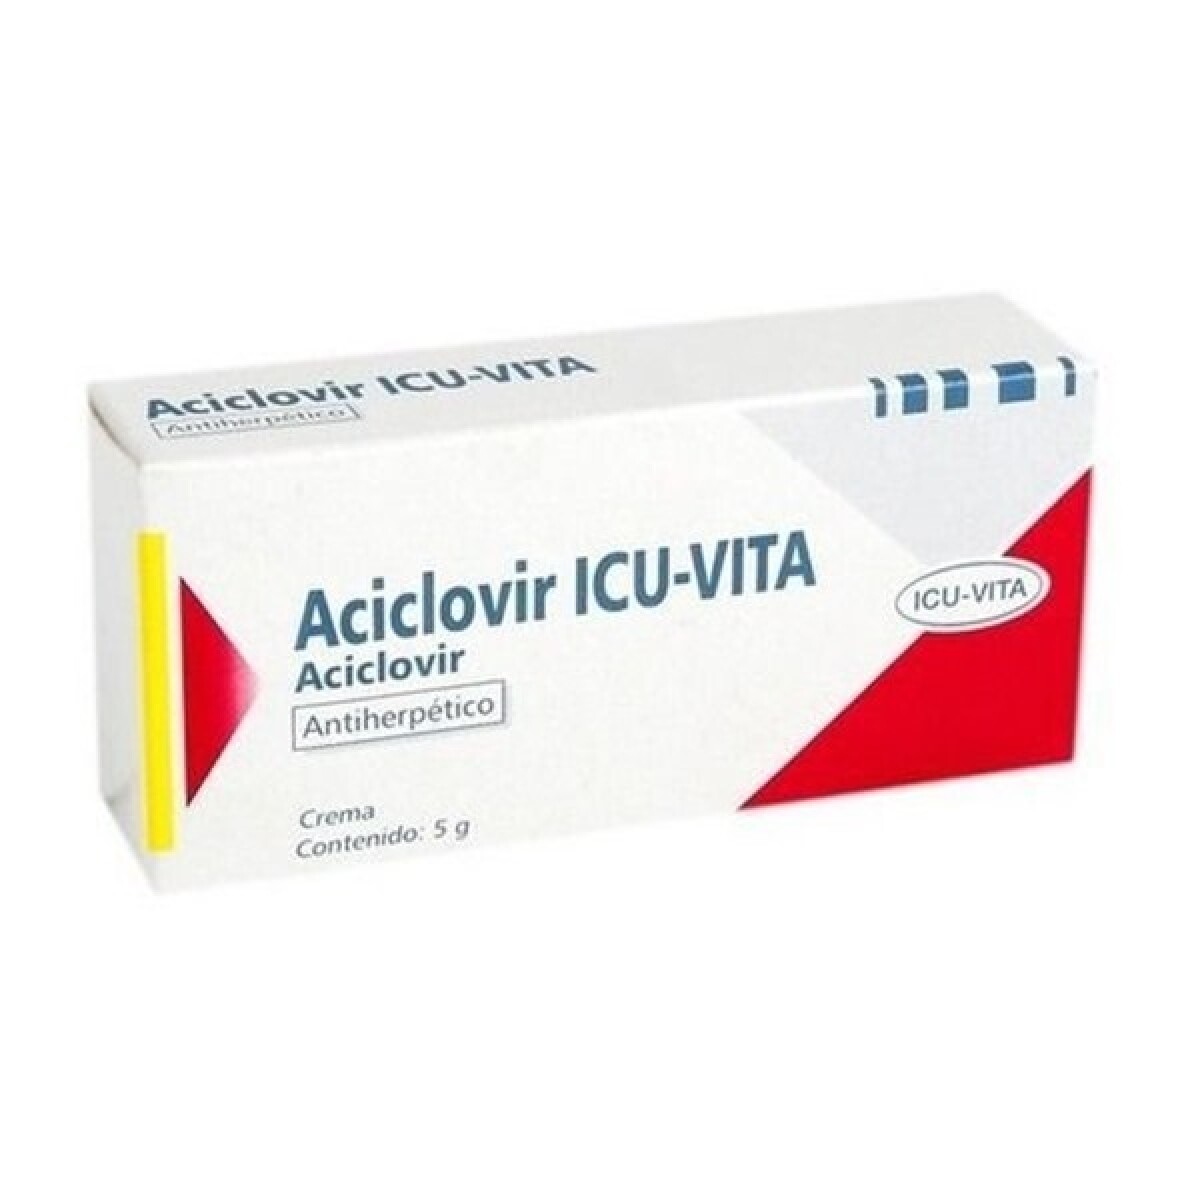 Aciclovir Icu-vita Crema 5 Grs. 